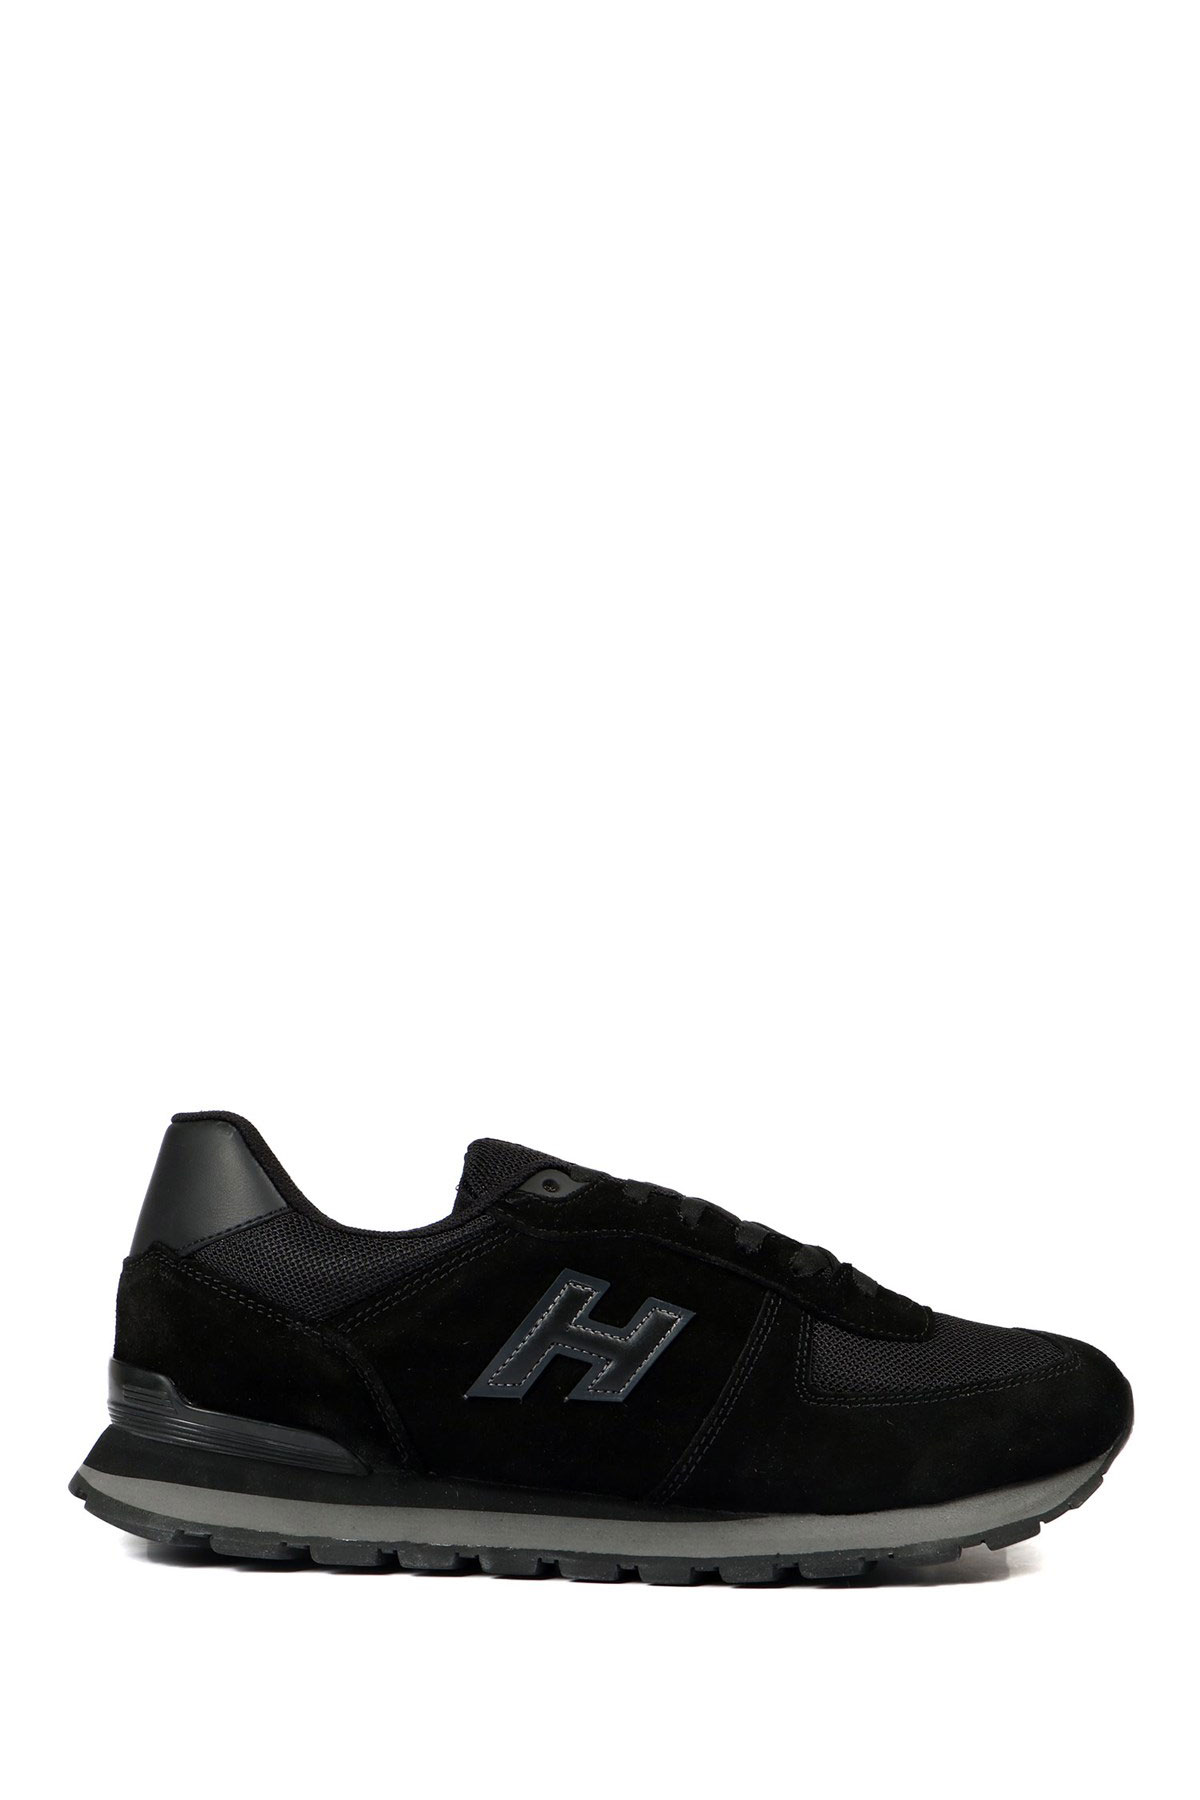 Hammer Jack Siyah Spor Ayakkabı (102 19250-M-3741)